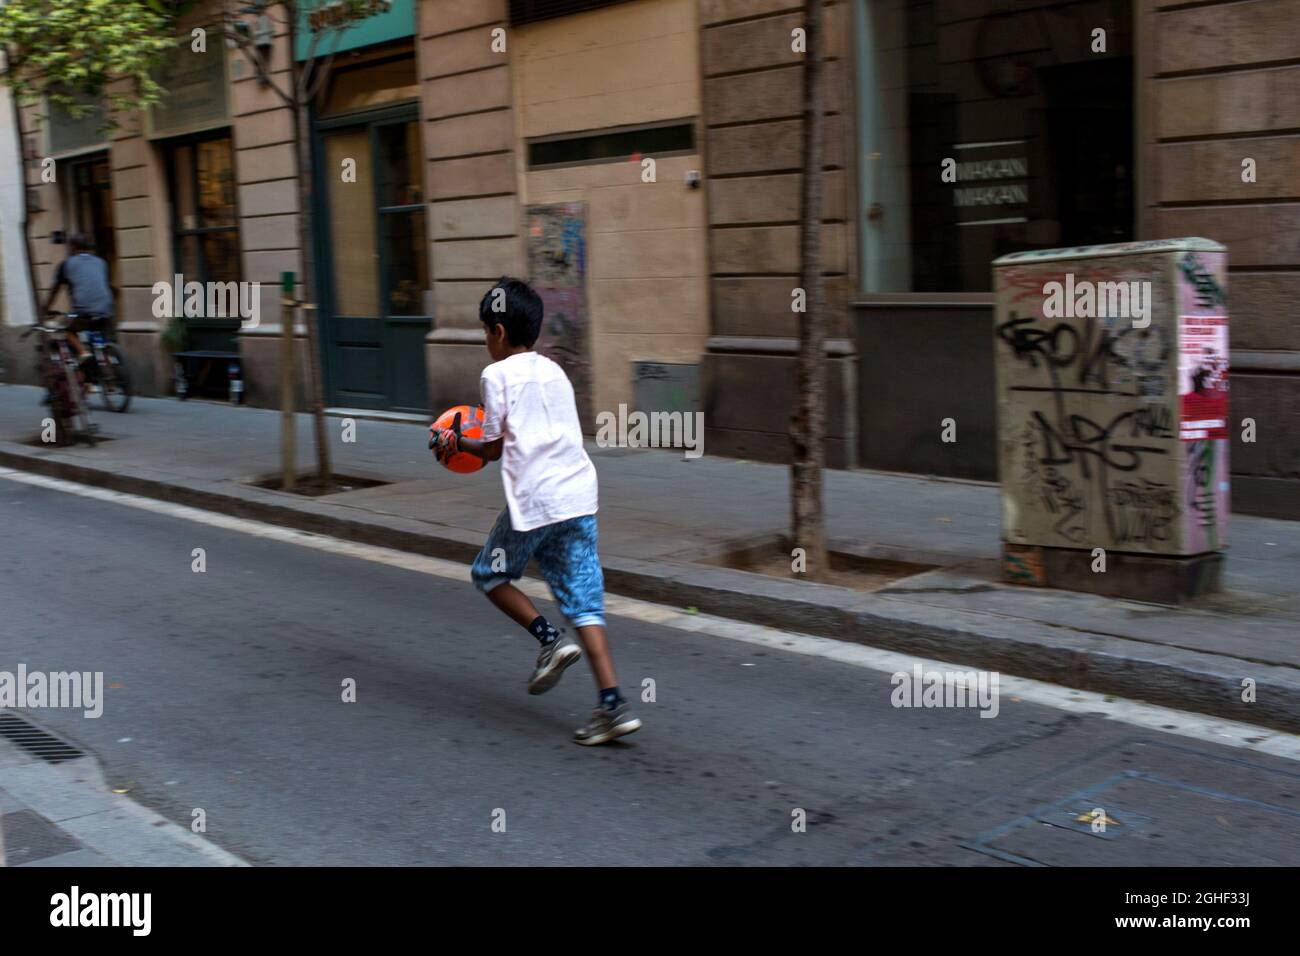 Barcelone, Catalogne, Espagne. Juillet 2018. Un garçon court dans la rue de Barcelone, Espagne. Banque D'Images